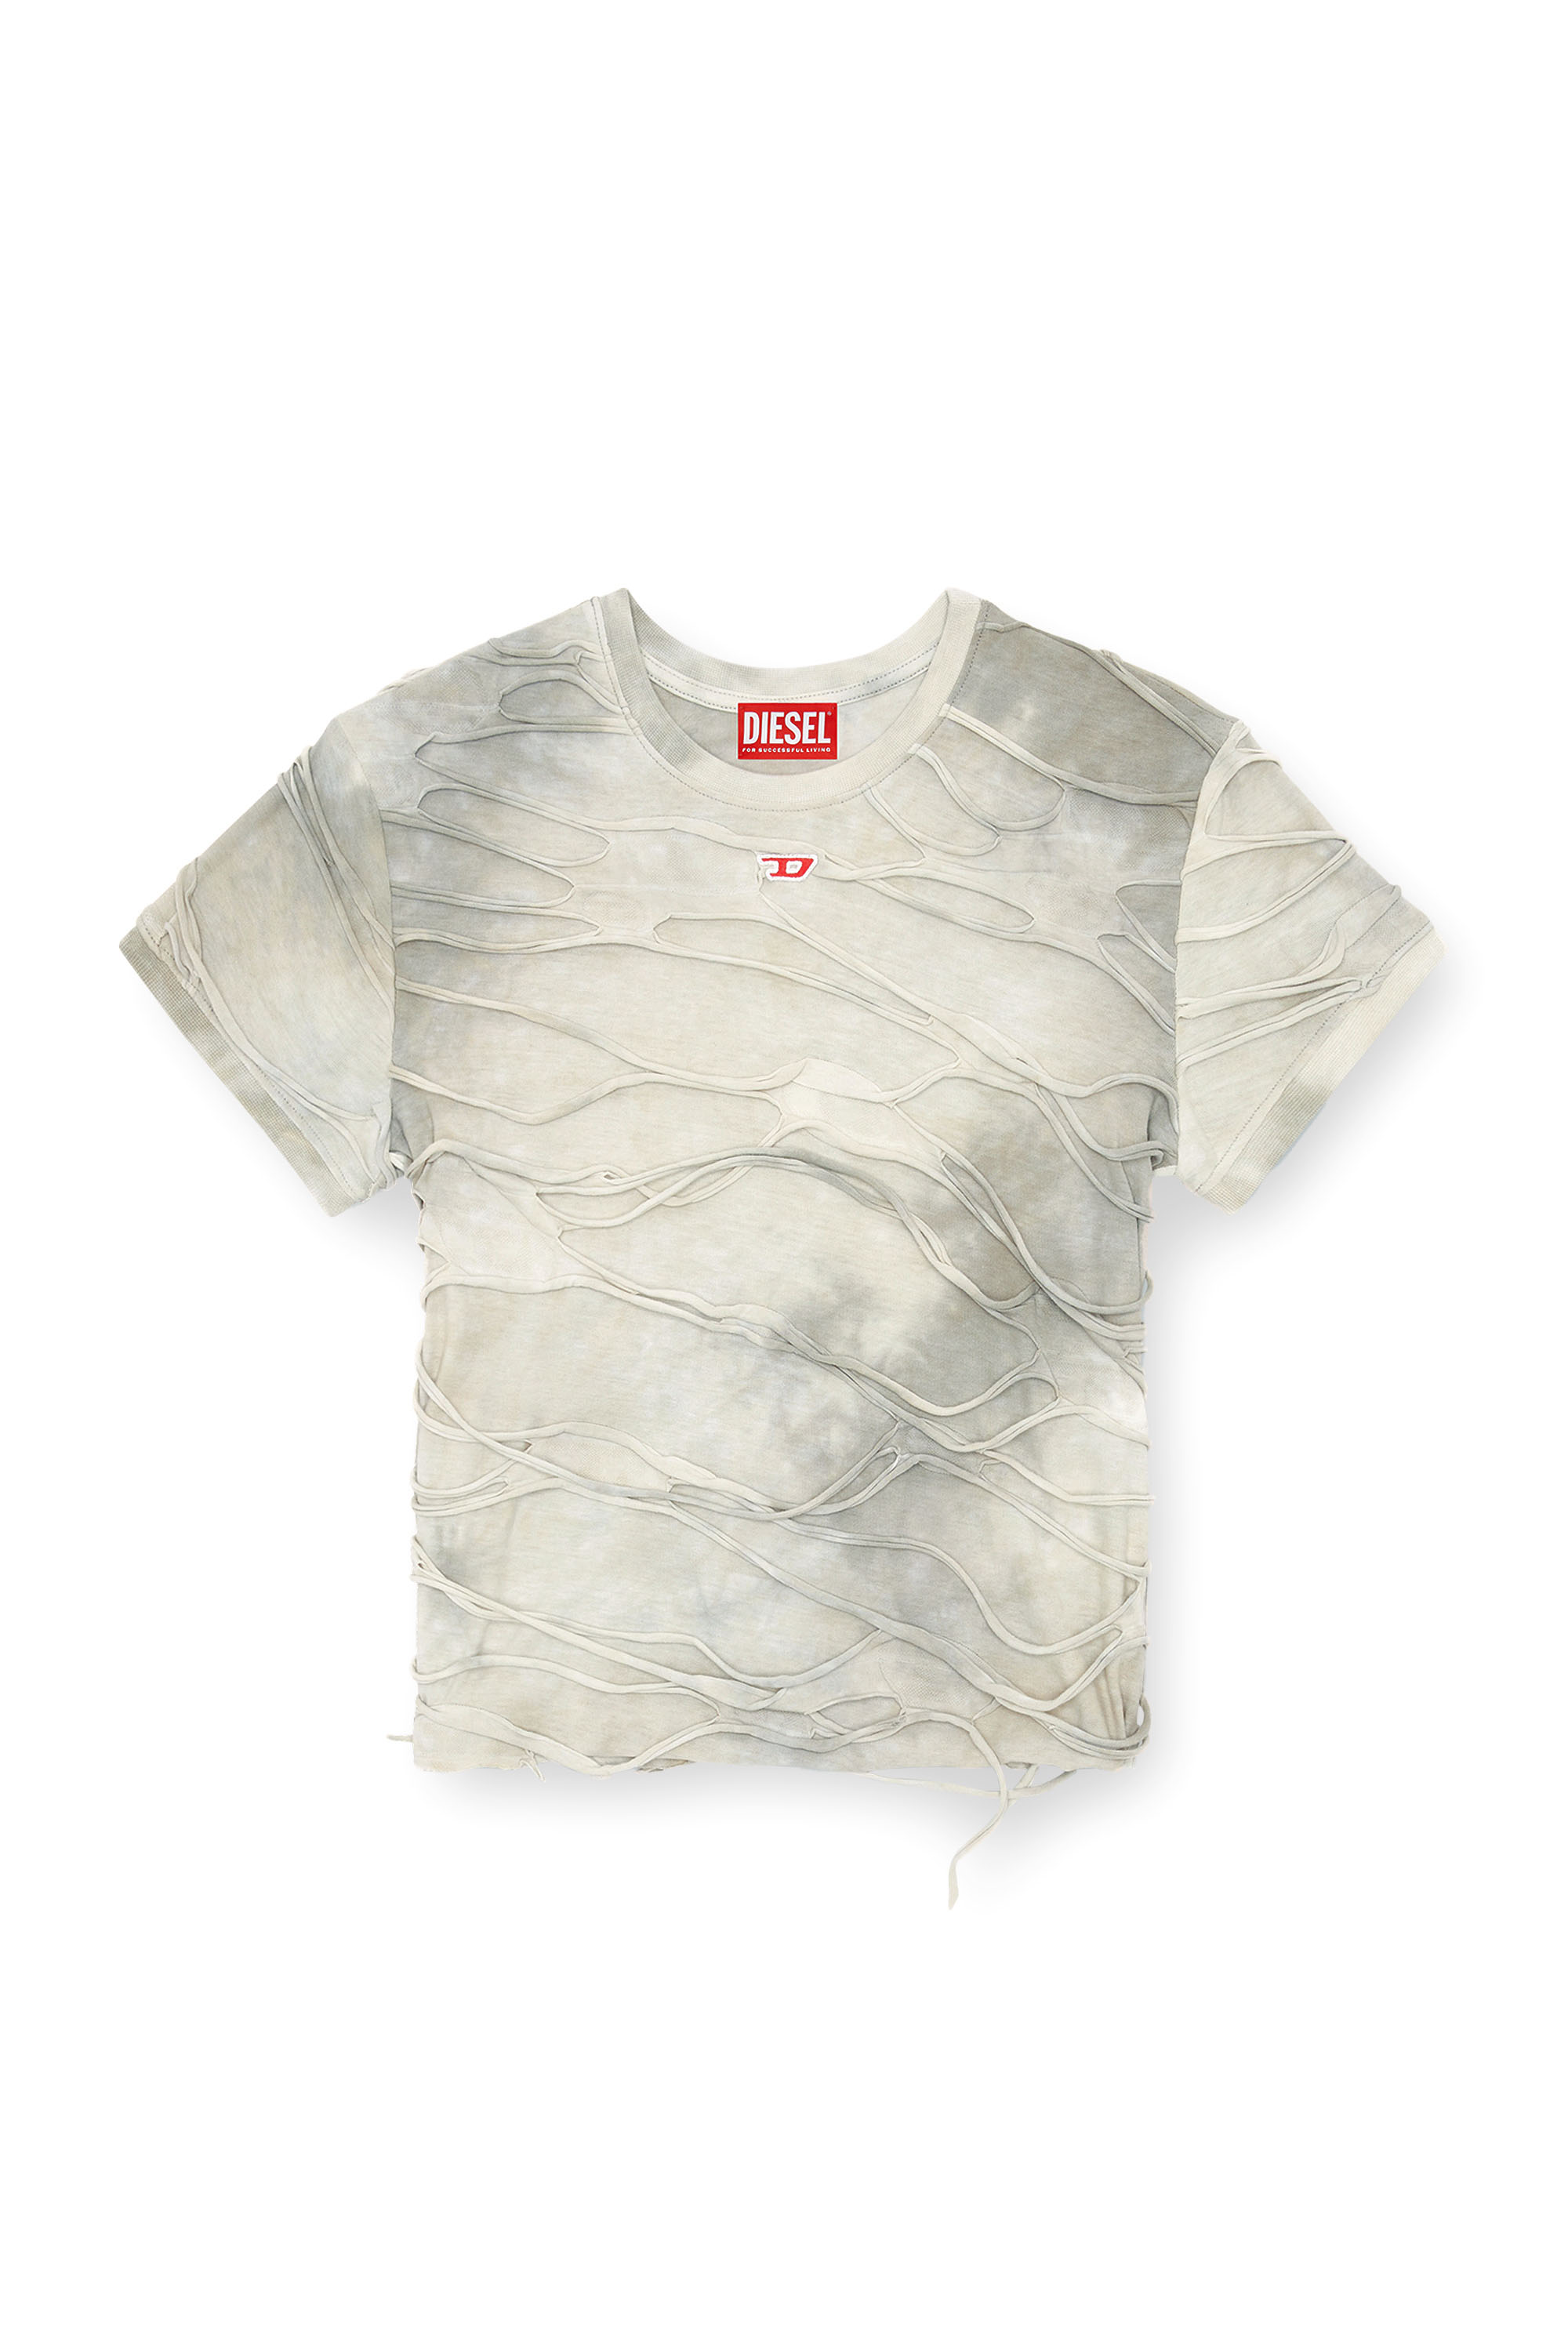 Diesel - T-UNCUTIE-LONG-P1, Femme T-shirt avec fils flottants in Gris - Image 3